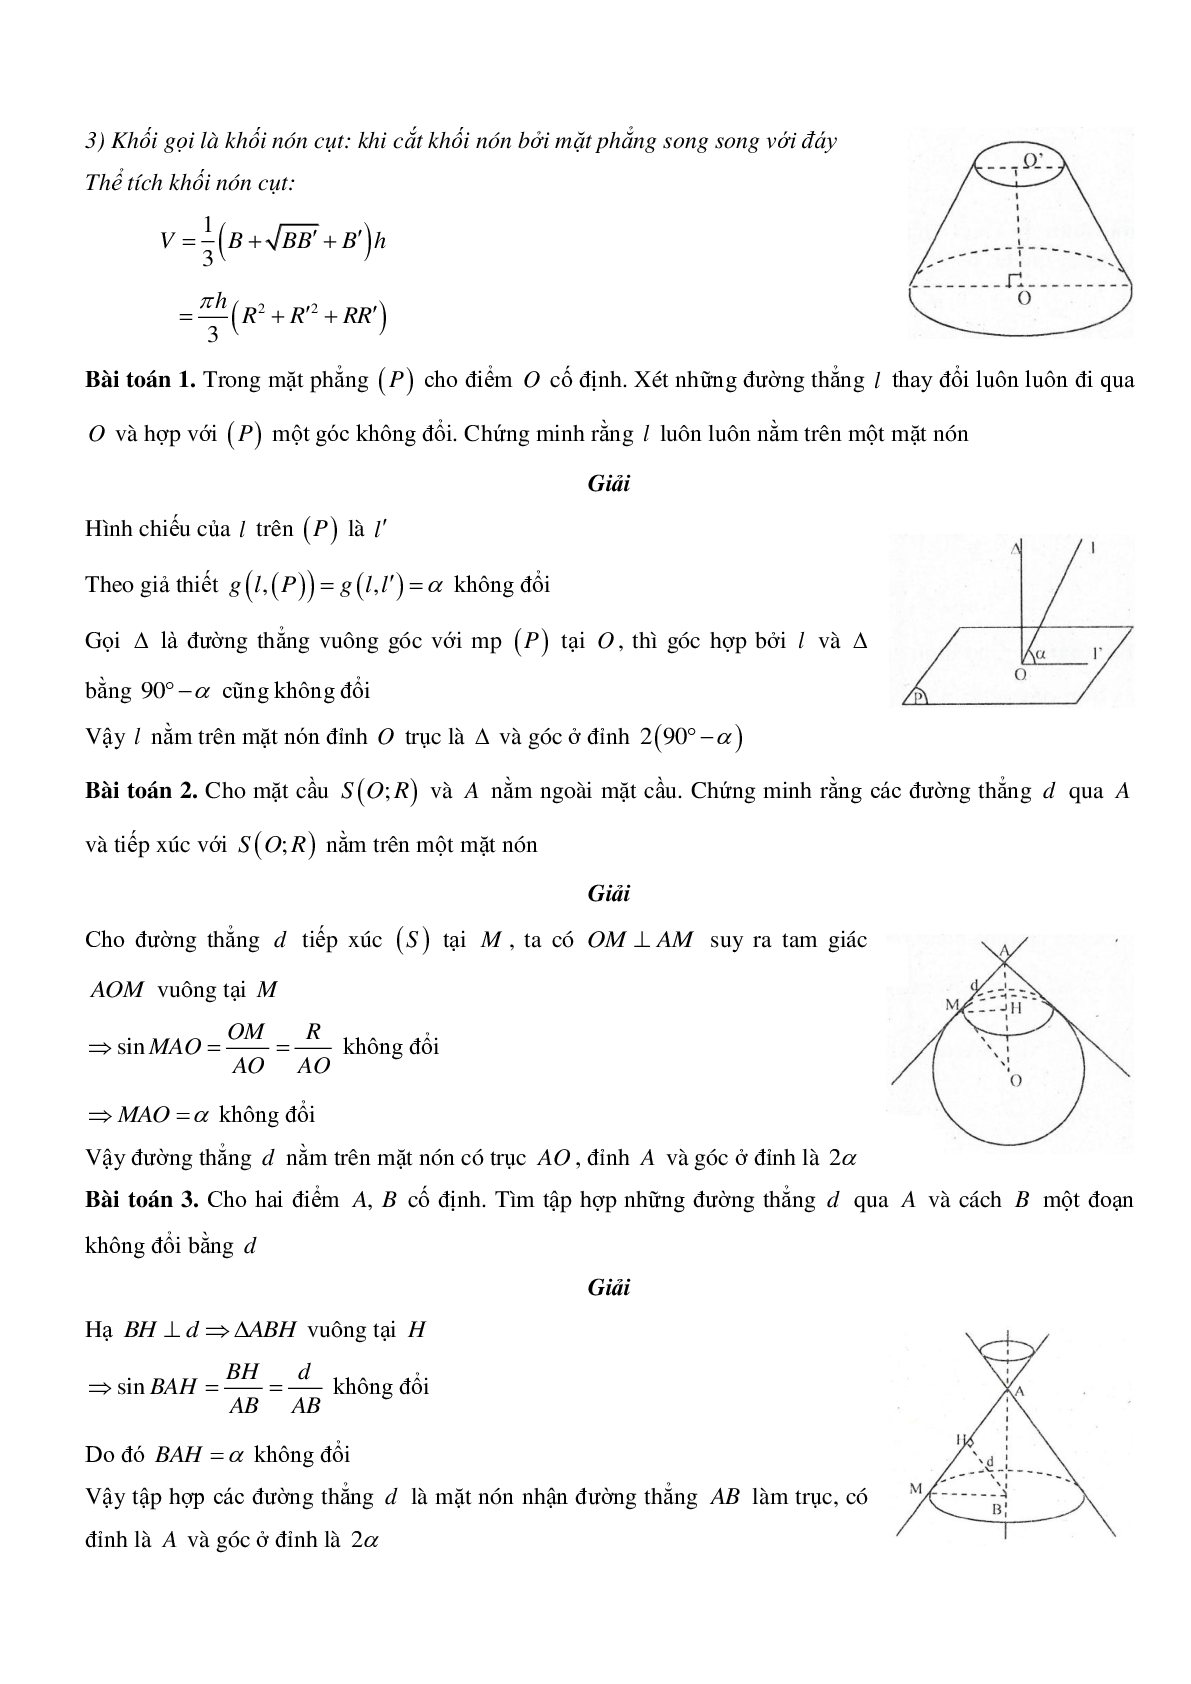 Mặt nón - Hình nón - Khối nón - Ôn thi THPT QG môn toán (trang 2)